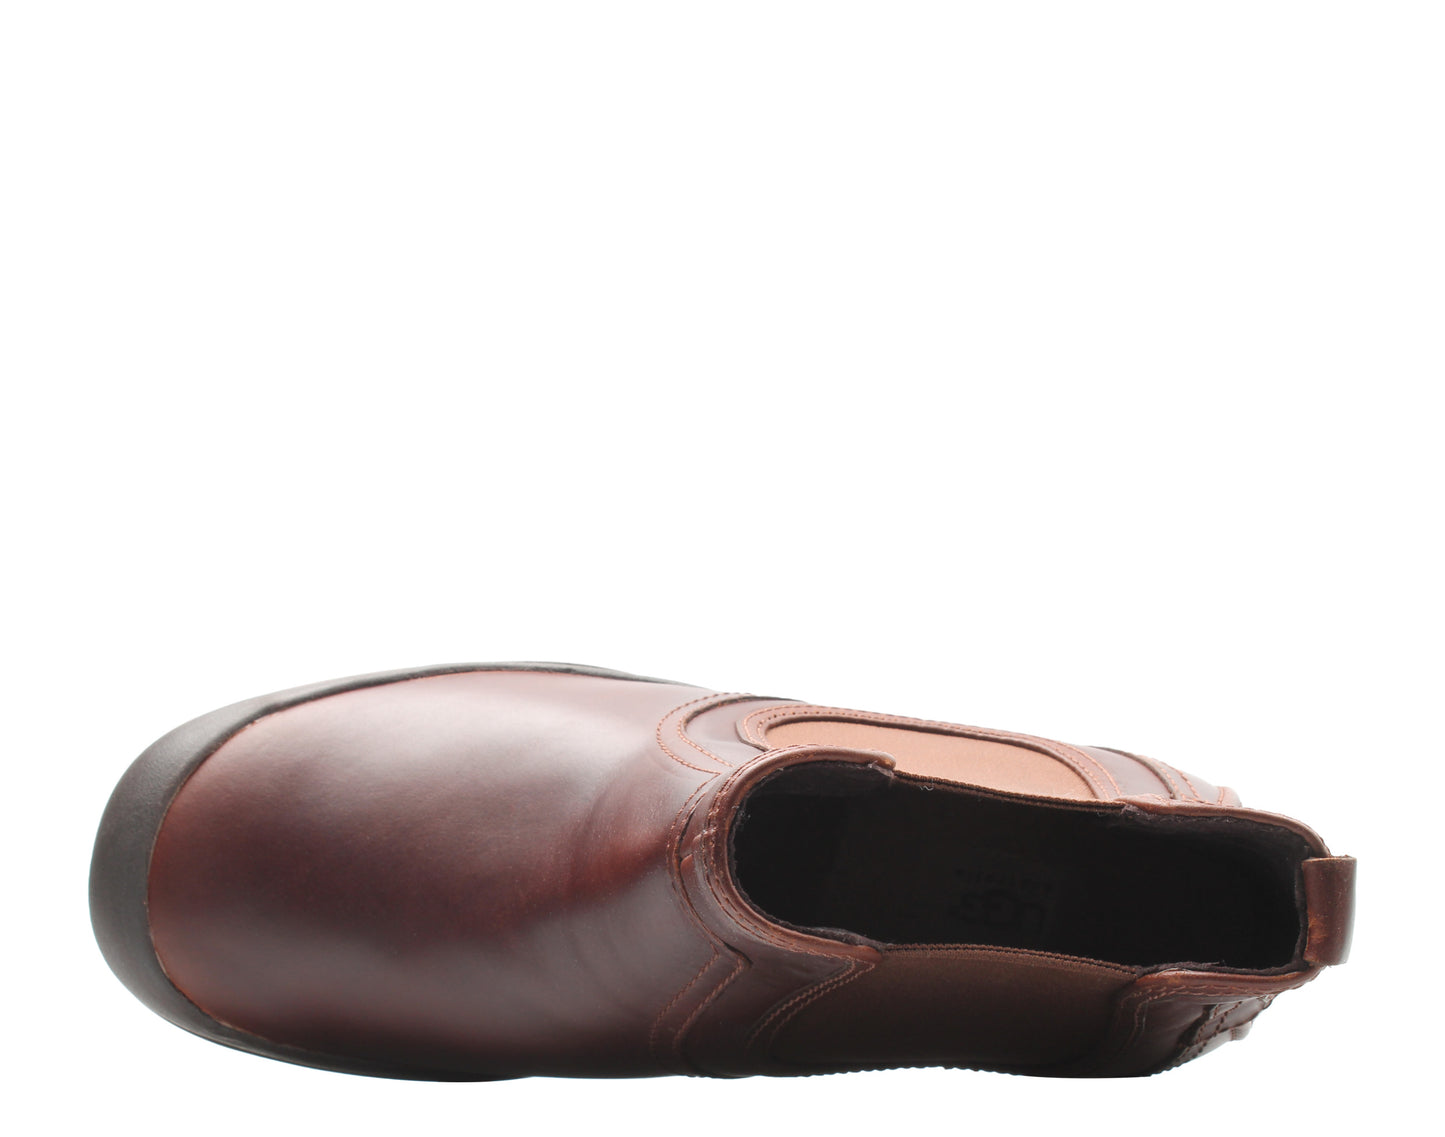 UGG Australia Matteson Chestnut Men's Chelsea Boots 1001575-CHE